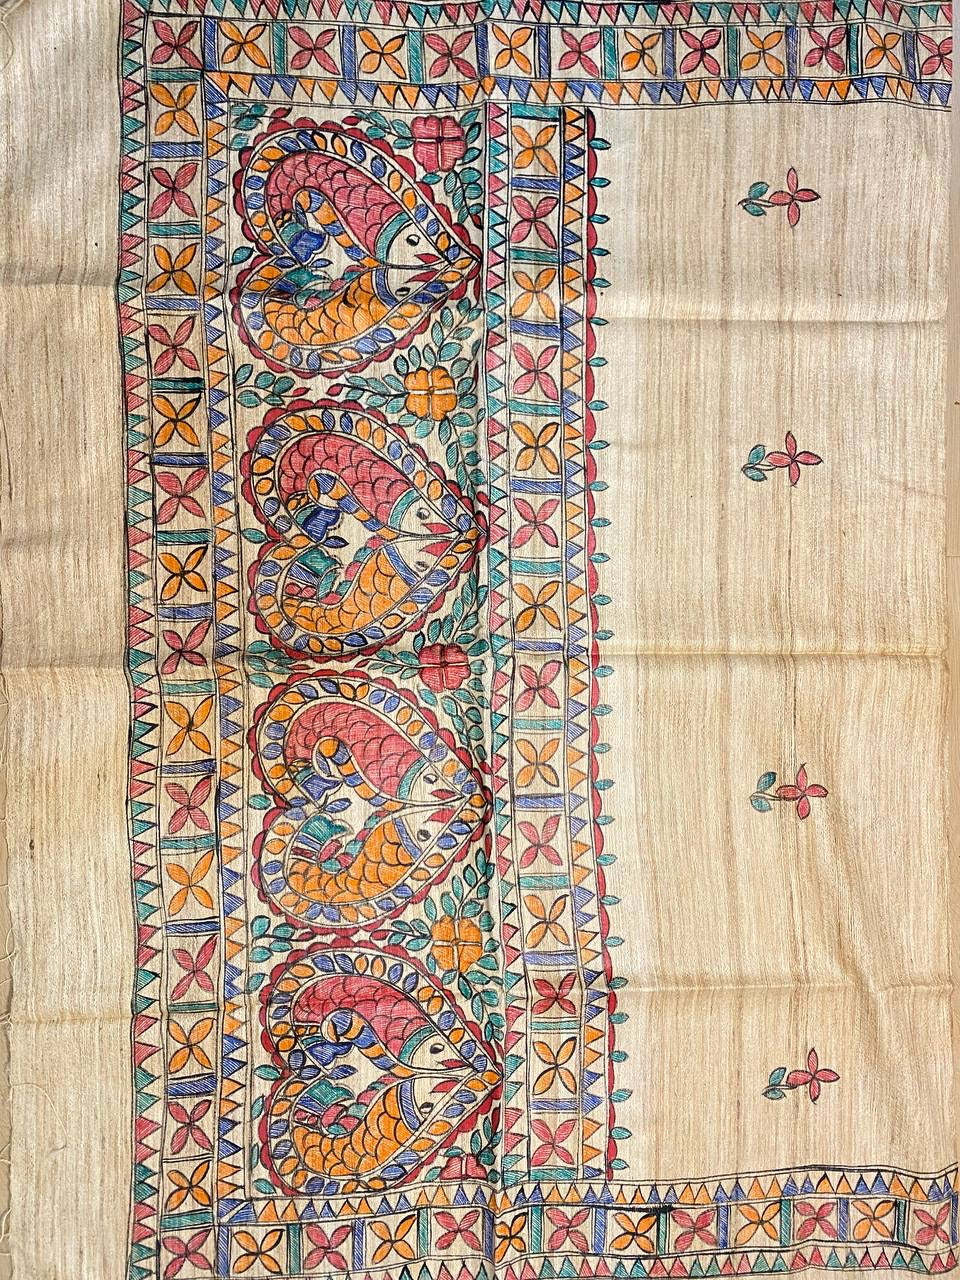 DUPATTA: Madhubani Handpainted Tussar Silk Handloom Dupatta| KIHUMS Dupatta